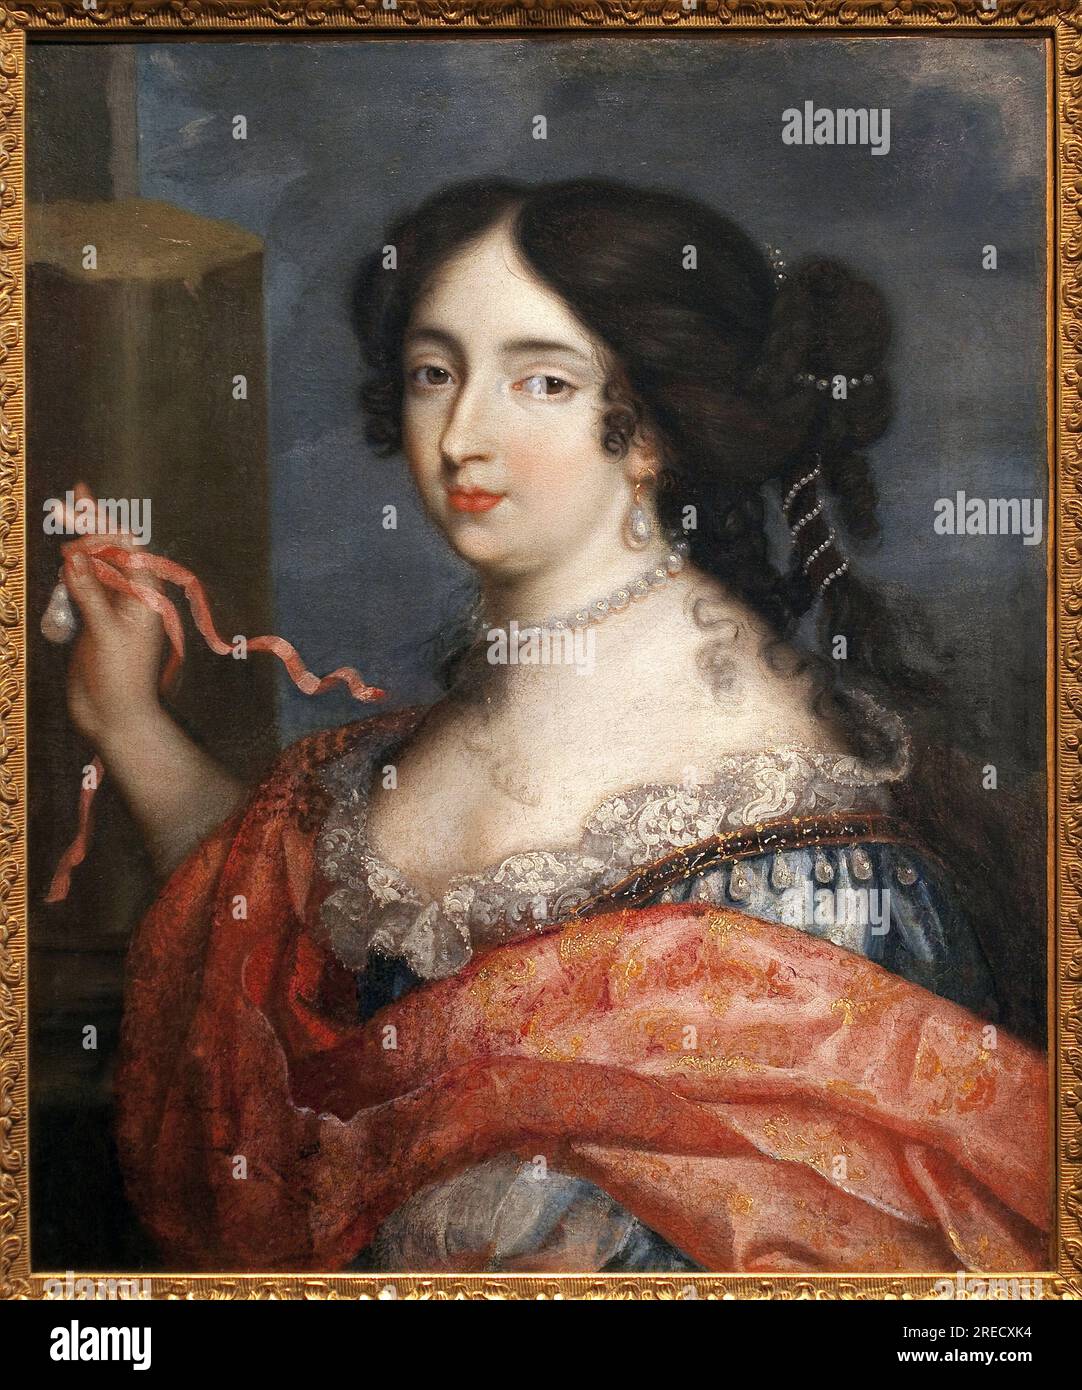 Francoise d'Aubigne (Madame de Maintenon, 1635-1719). Peinture de Pierre I Mignard, dit le Romain (1612-1695), huile sur toile, art francais, 17e siecle. Musee des Beaux Arts de Niort. Stock Photo